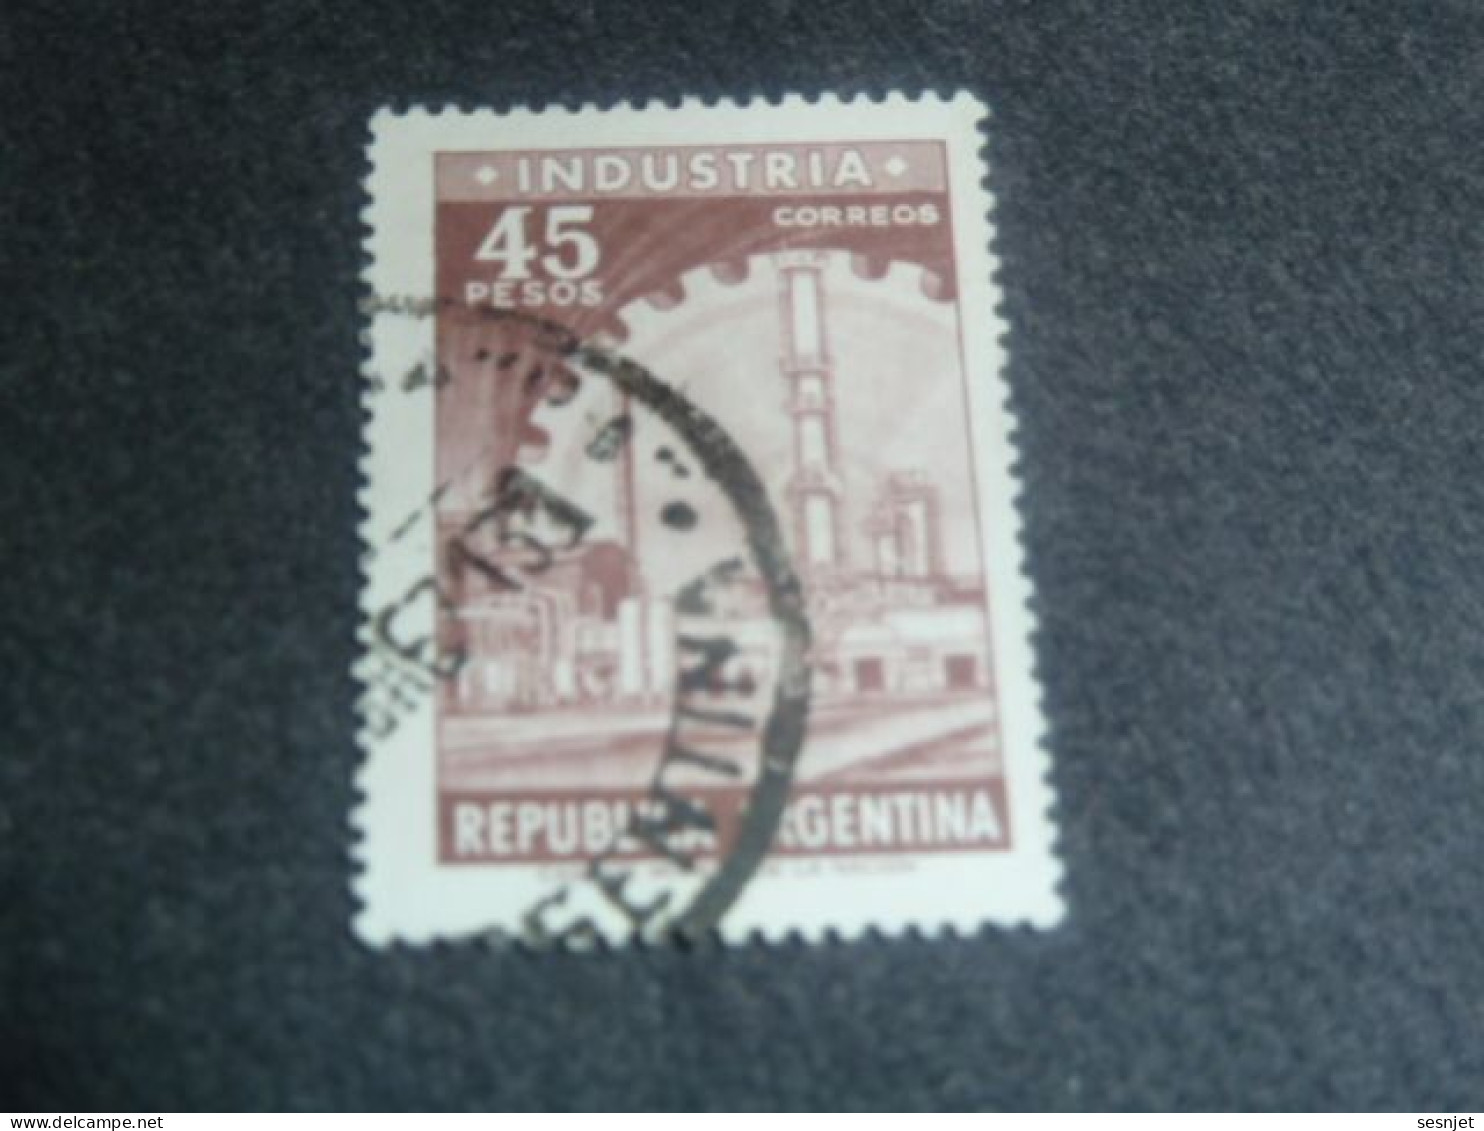 Republica Argentina - Industria - 45 Pesos - Yt 734 - Brun-lilas - Oblitéré - Année 1966 - - Used Stamps